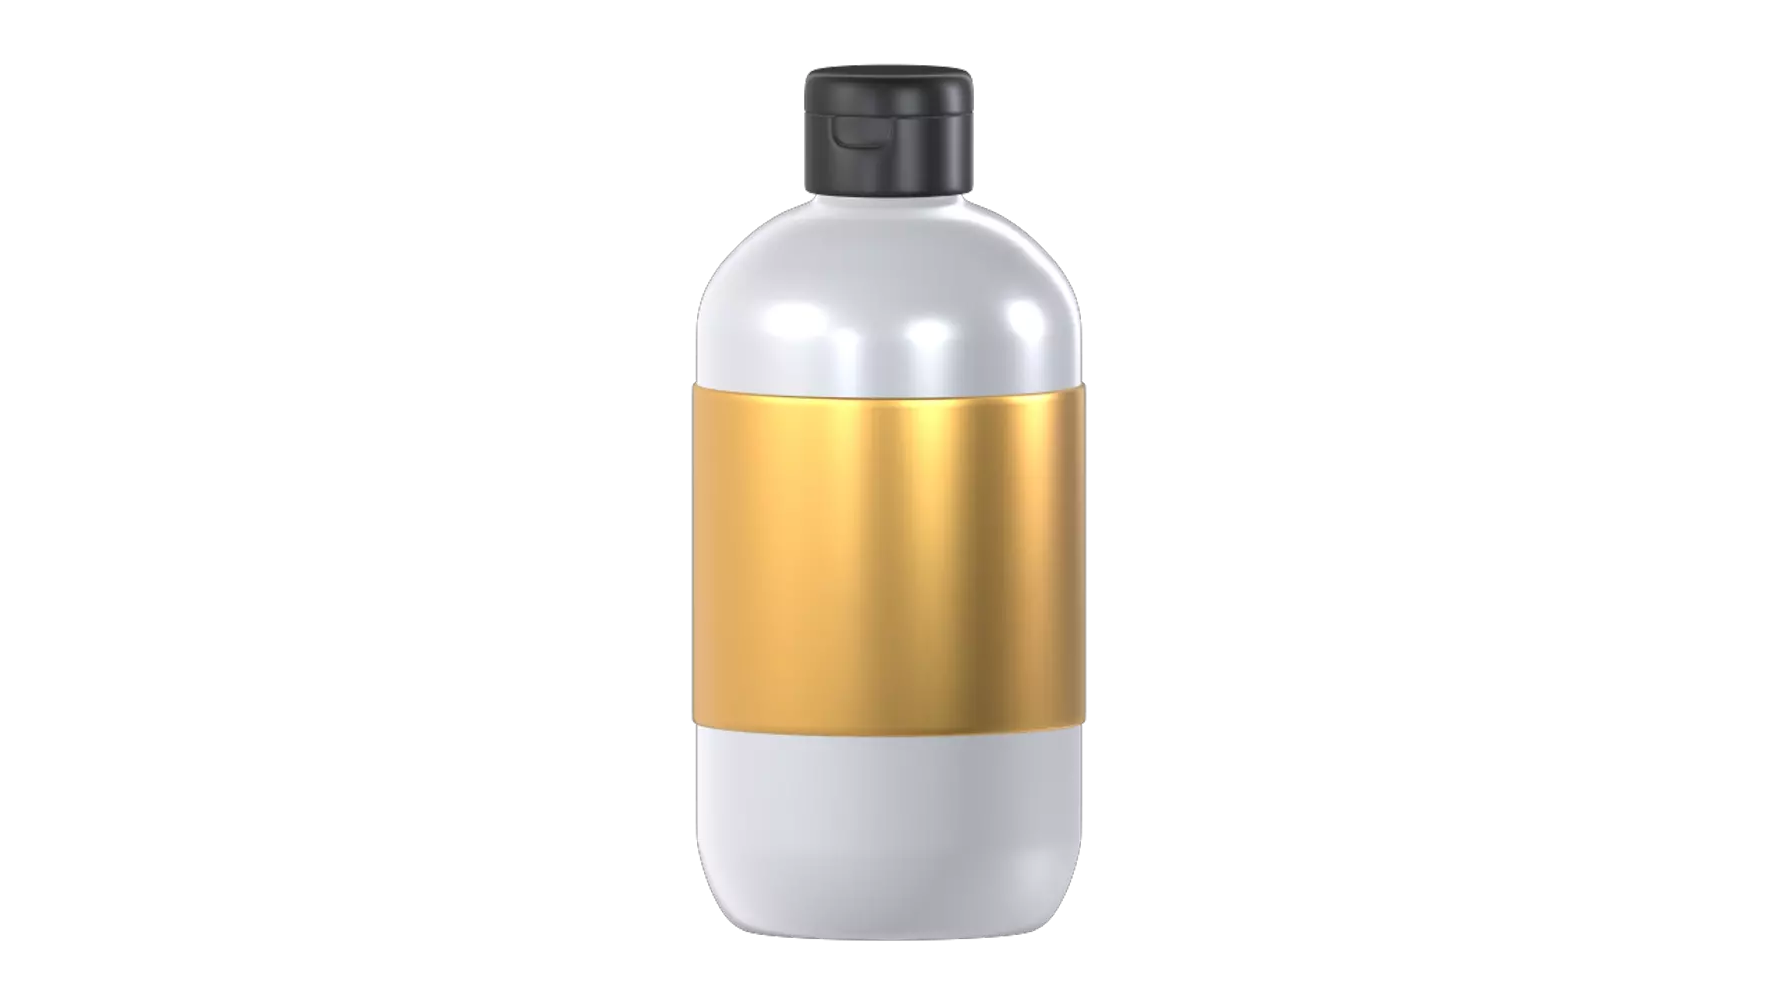 Shampoo Bottle 3D Graphic